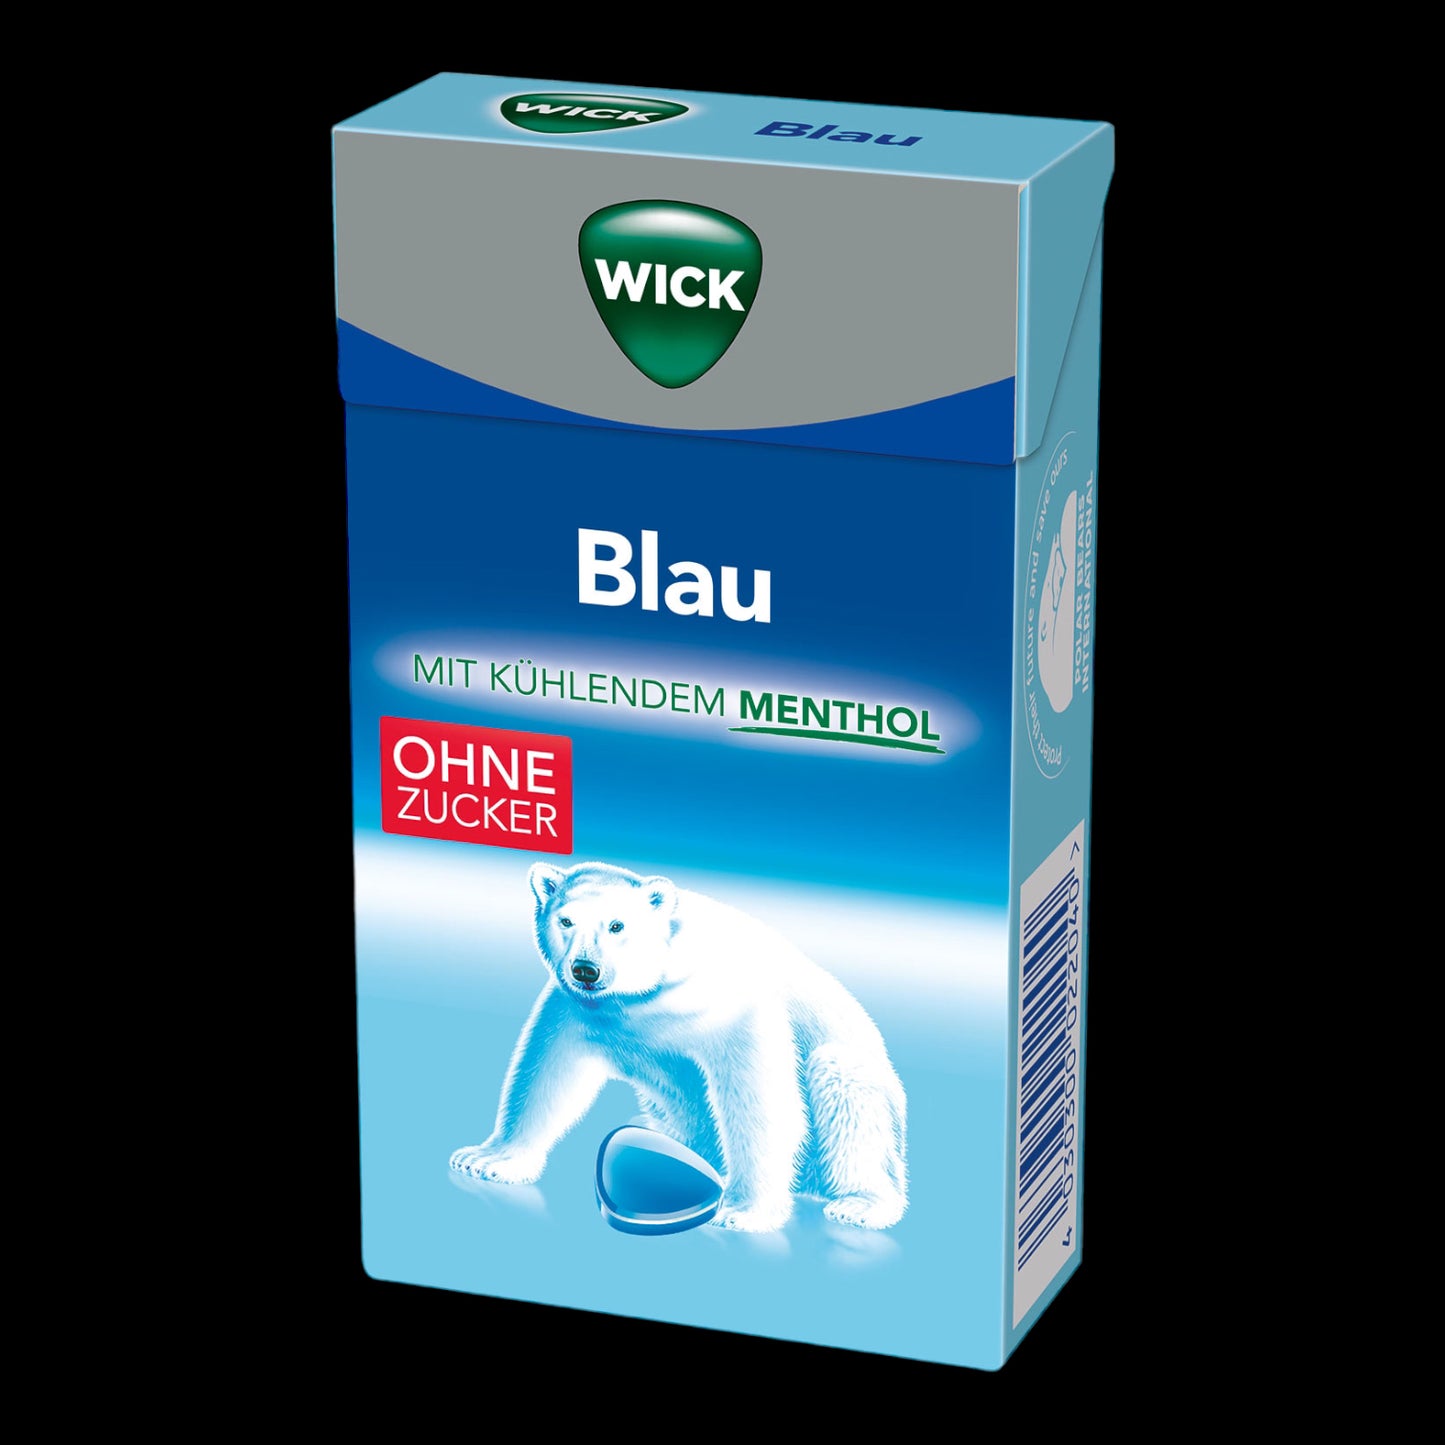 Wick Blau ohne Zucker 46g